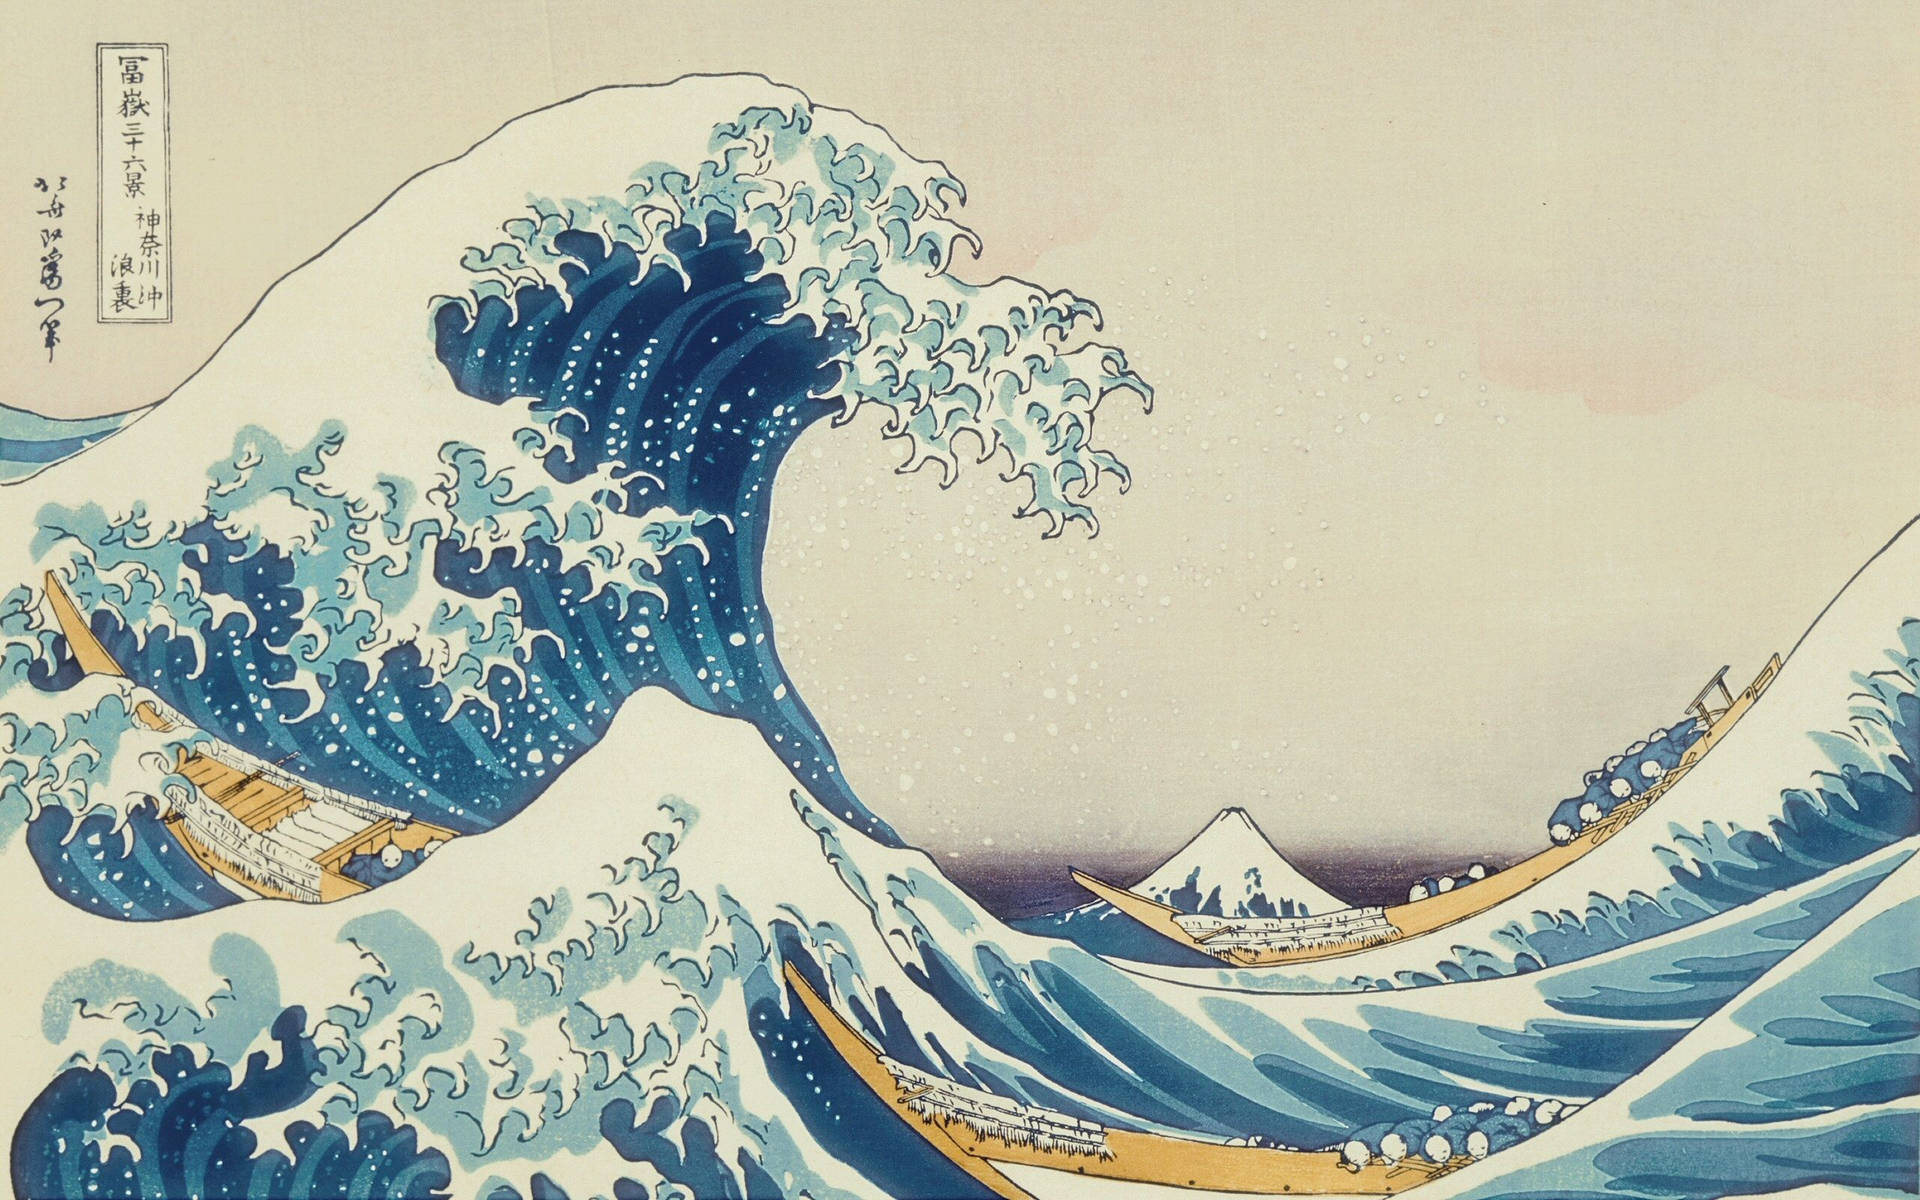 Japanese Art of Waves wallpaper